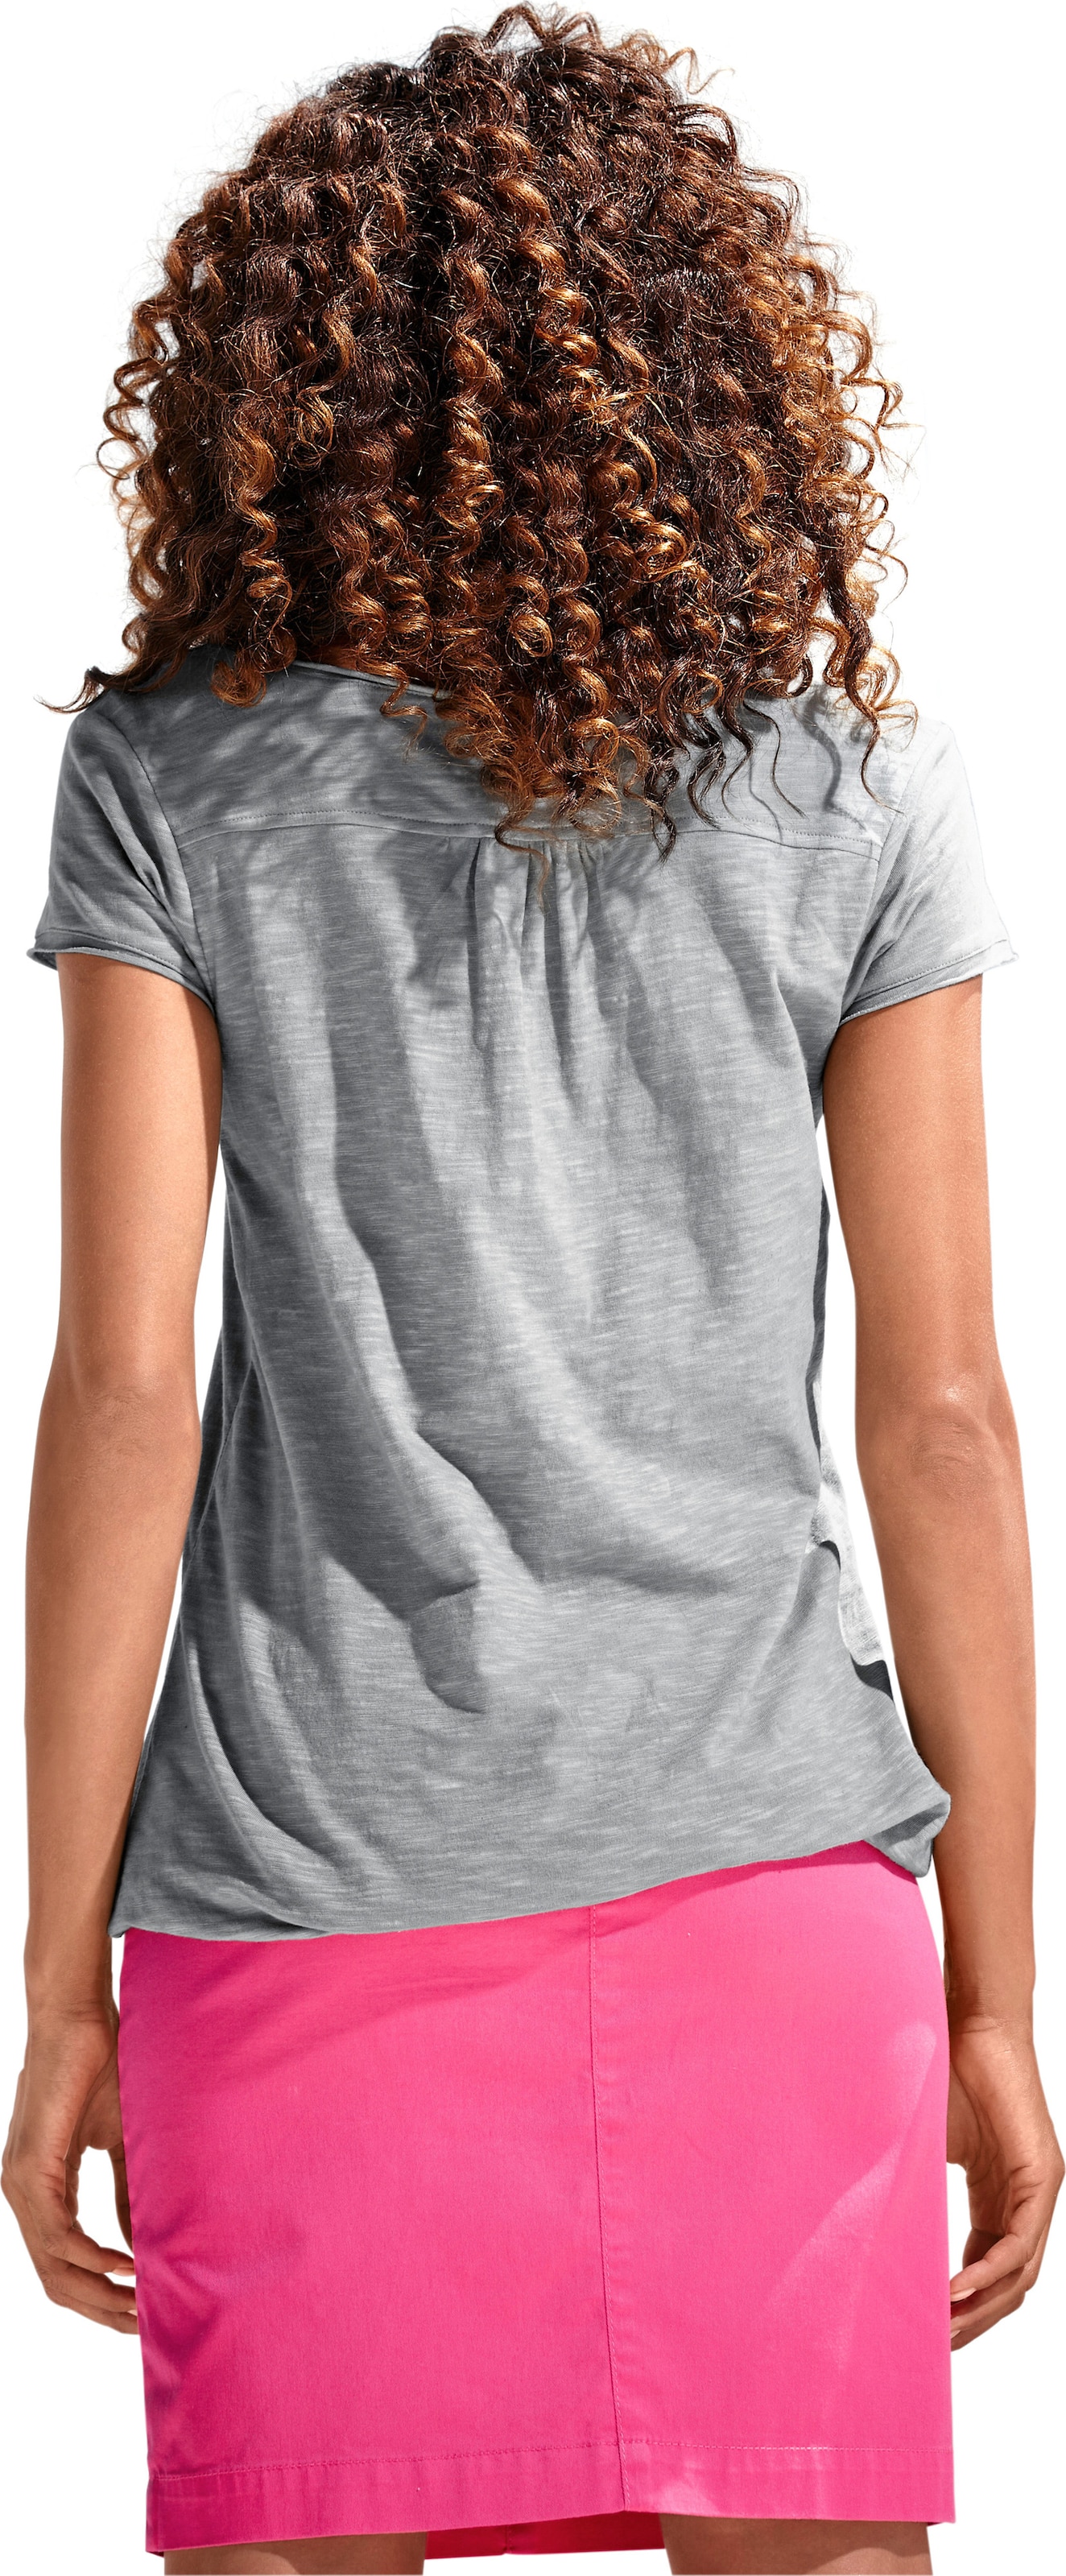 Spitzen Shirt  günstig Kaufen-Rundhals-Shirt in grau von heine. Rundhals-Shirt in grau von heine <![CDATA[Rundhals-Shirt Moderne Form mit Gummizugbund. Mit Spitzen-Details und schimmernden Knöpfen. Leichte Shirtware mit Flammé-Effekt.]]>. 